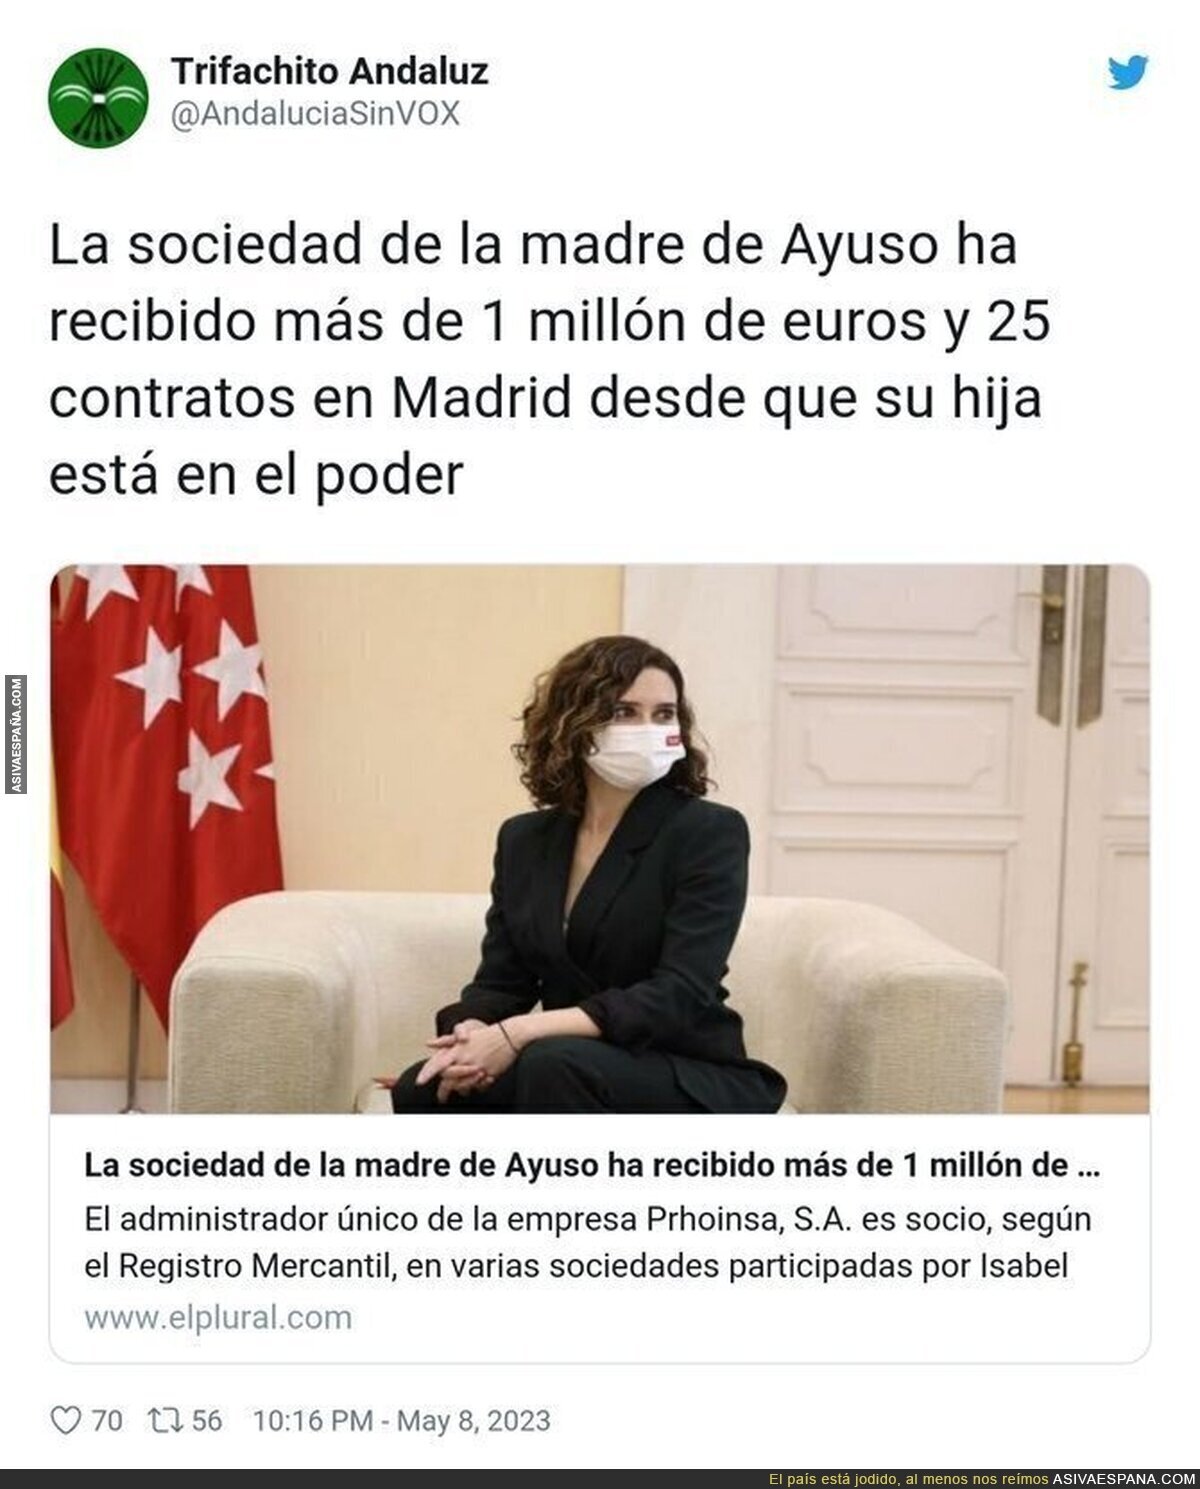 El enchufismo que hay en la Comunidad de Madrid